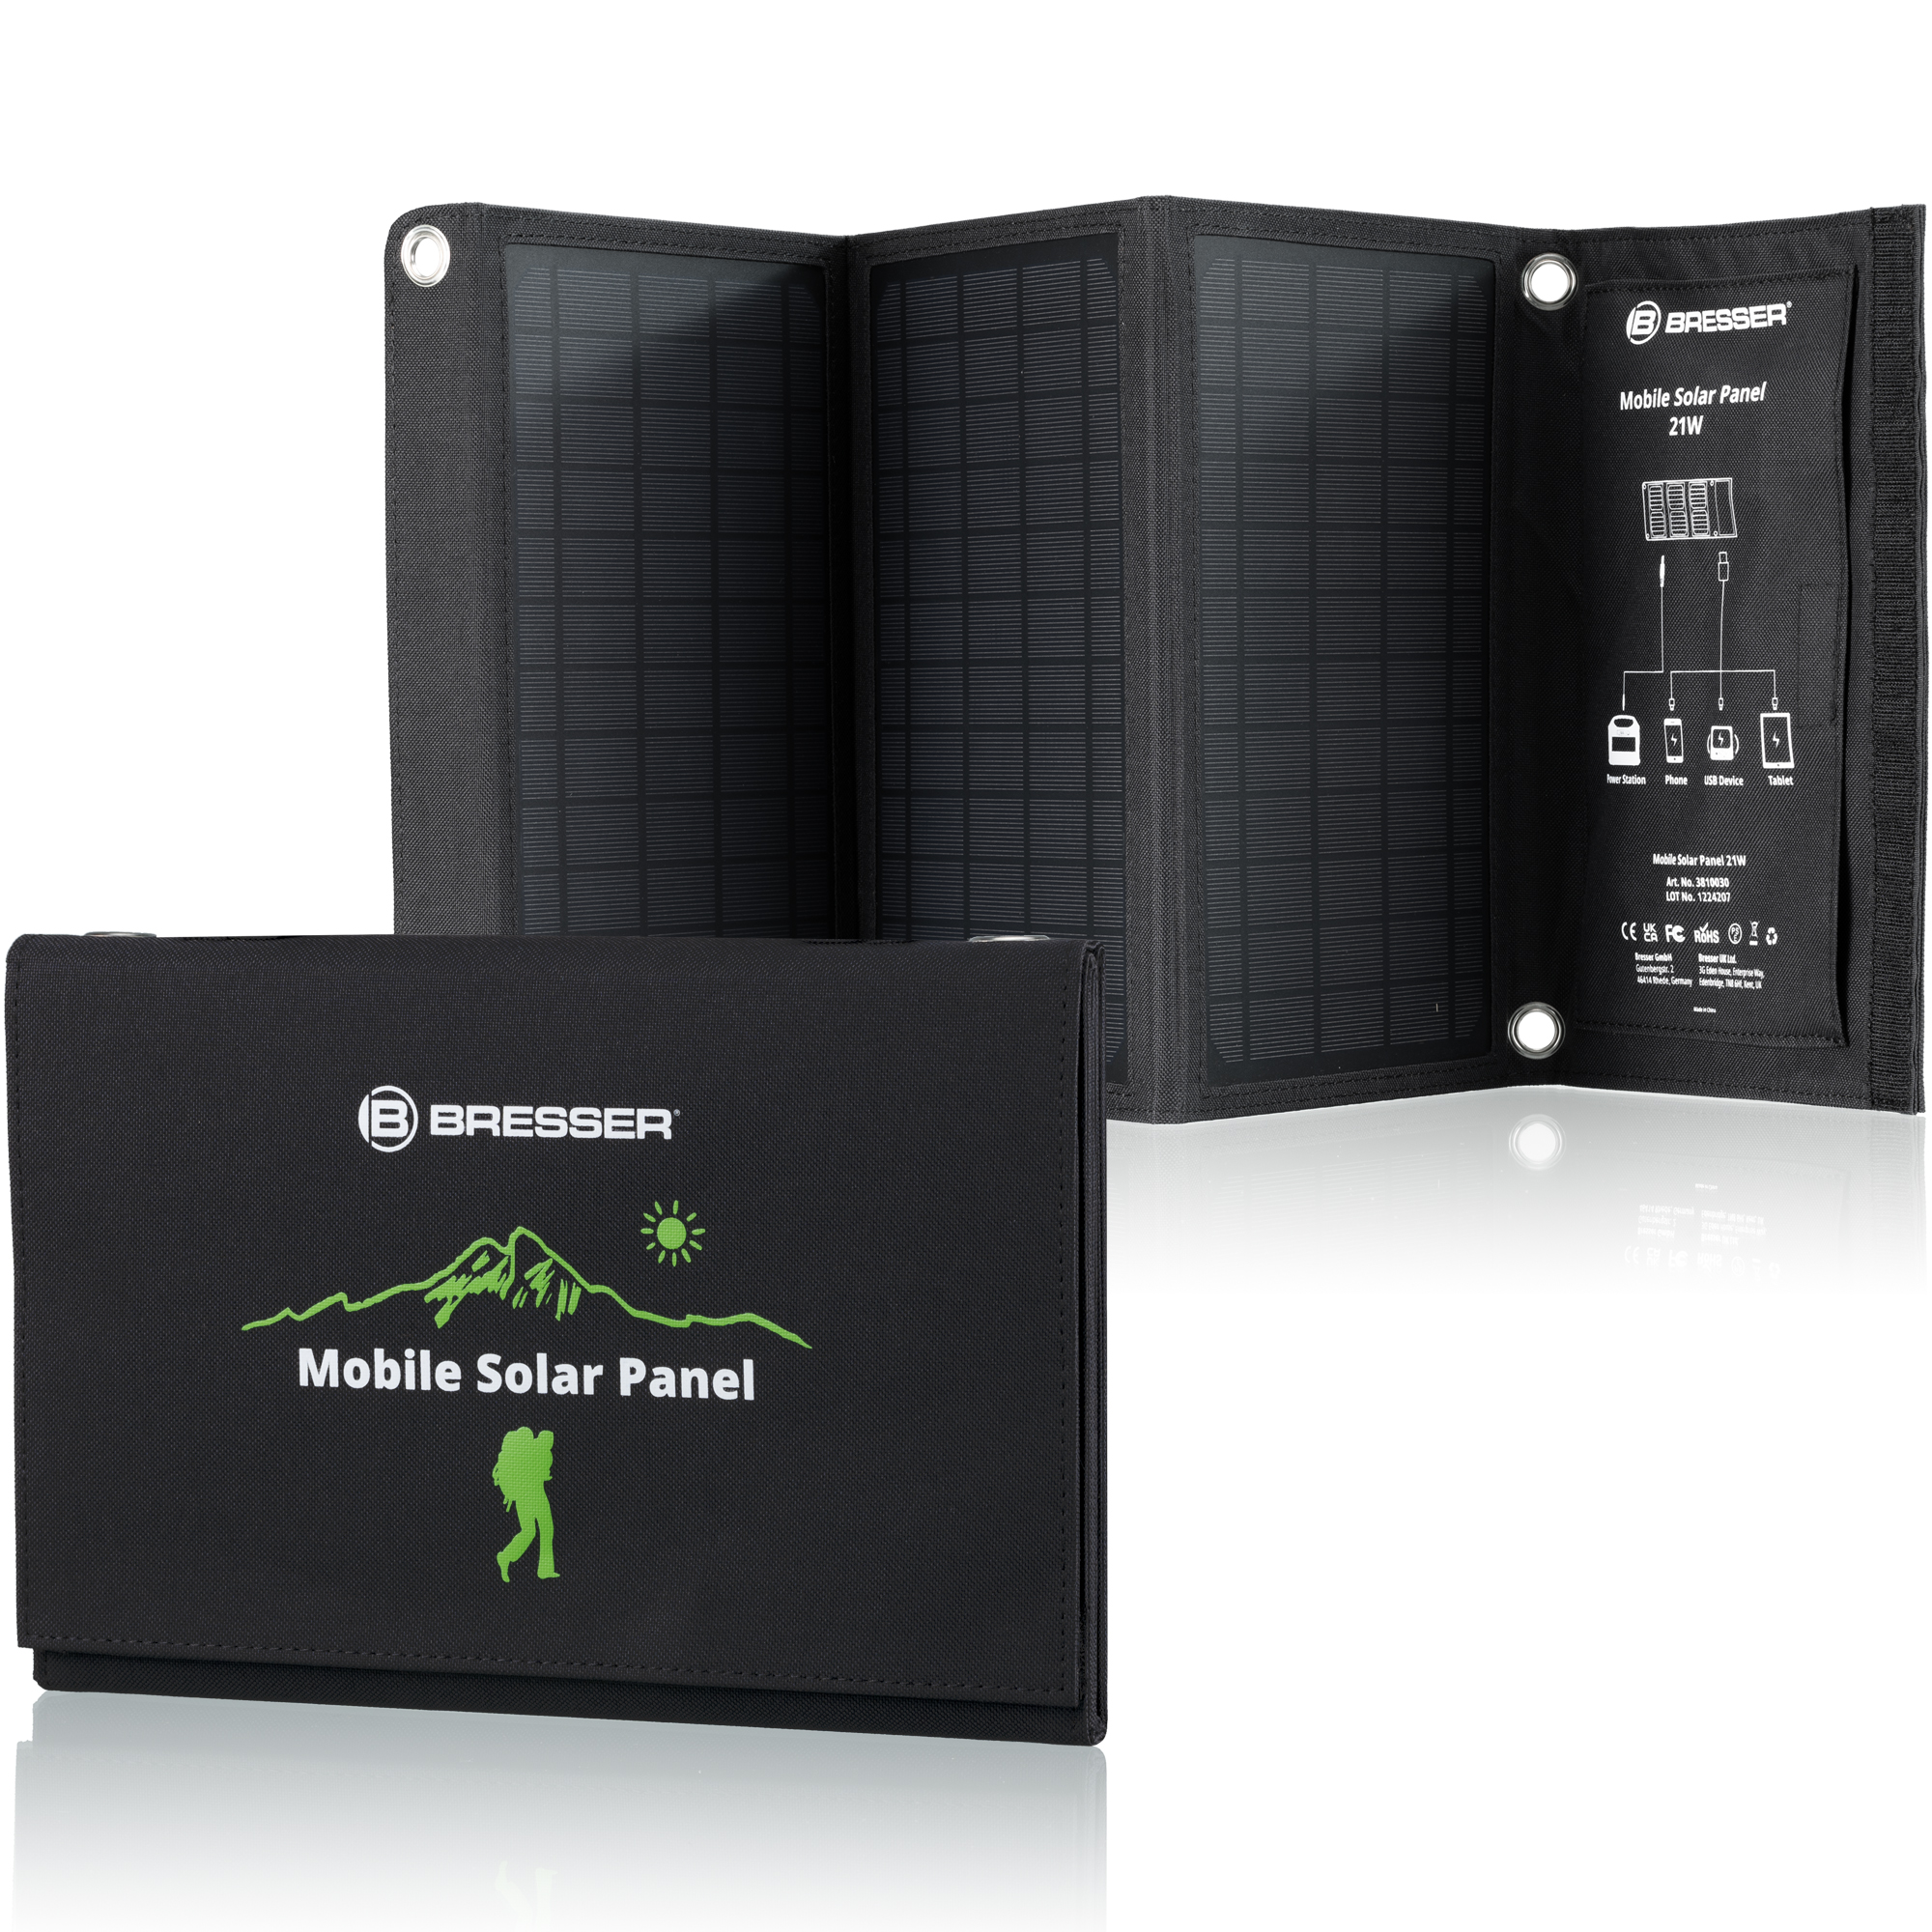 KIT Batterie externe portable 500 W + Panneau solaire 60 W Bresser